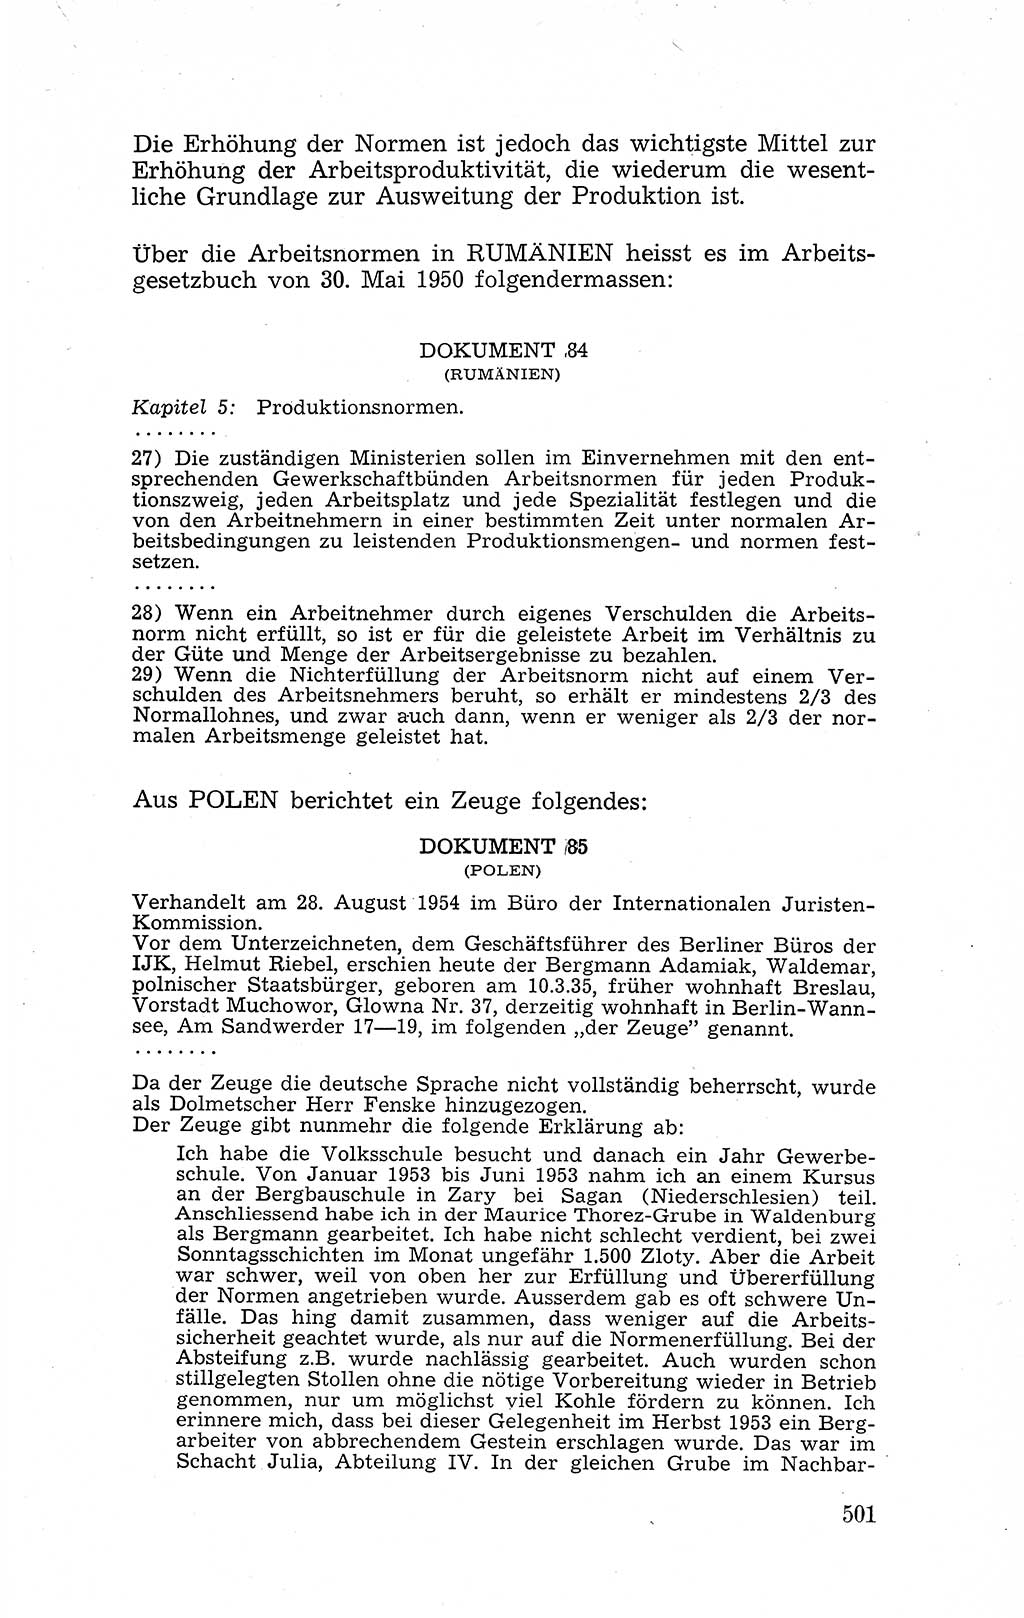 Recht in Fesseln, Dokumente, Internationale Juristen-Kommission [Bundesrepublik Deutschland (BRD)] 1955, Seite 501 (R. Dok. IJK BRD 1955, S. 501)